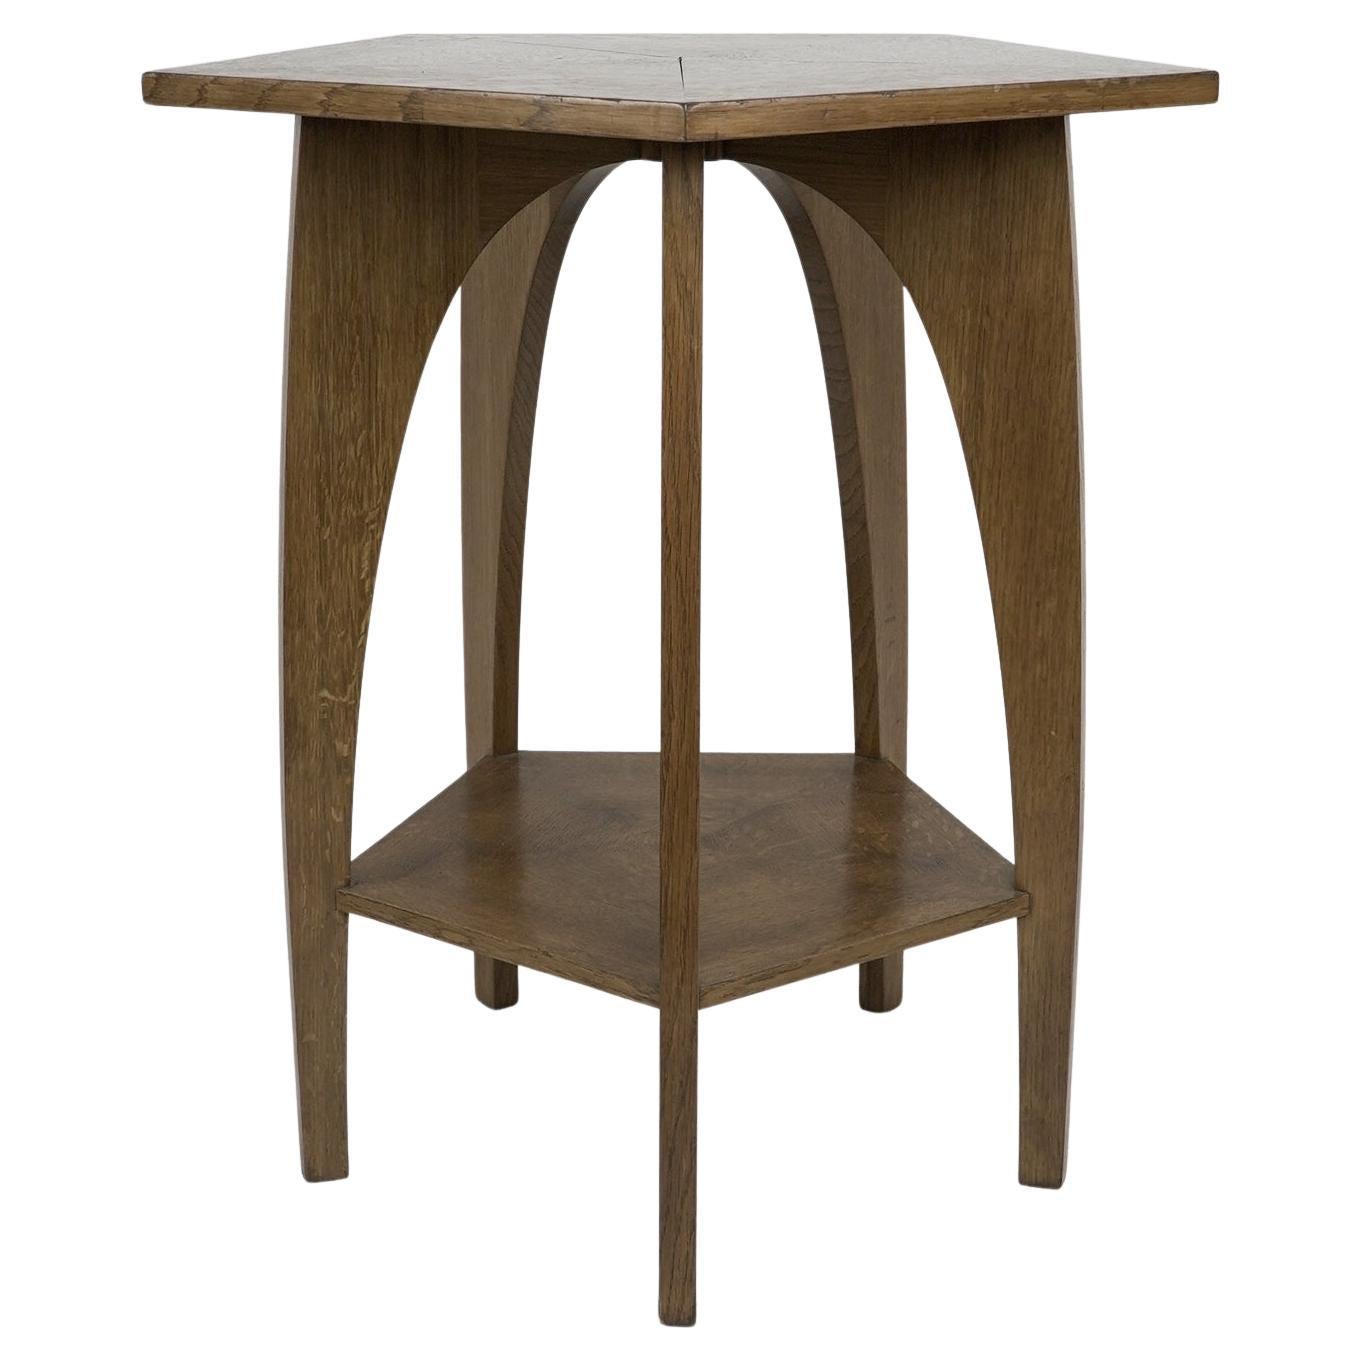 Ein moderner, handwerklich gefertigter fünfeckiger Tisch aus Eiche im Arts and Crafts-Stil